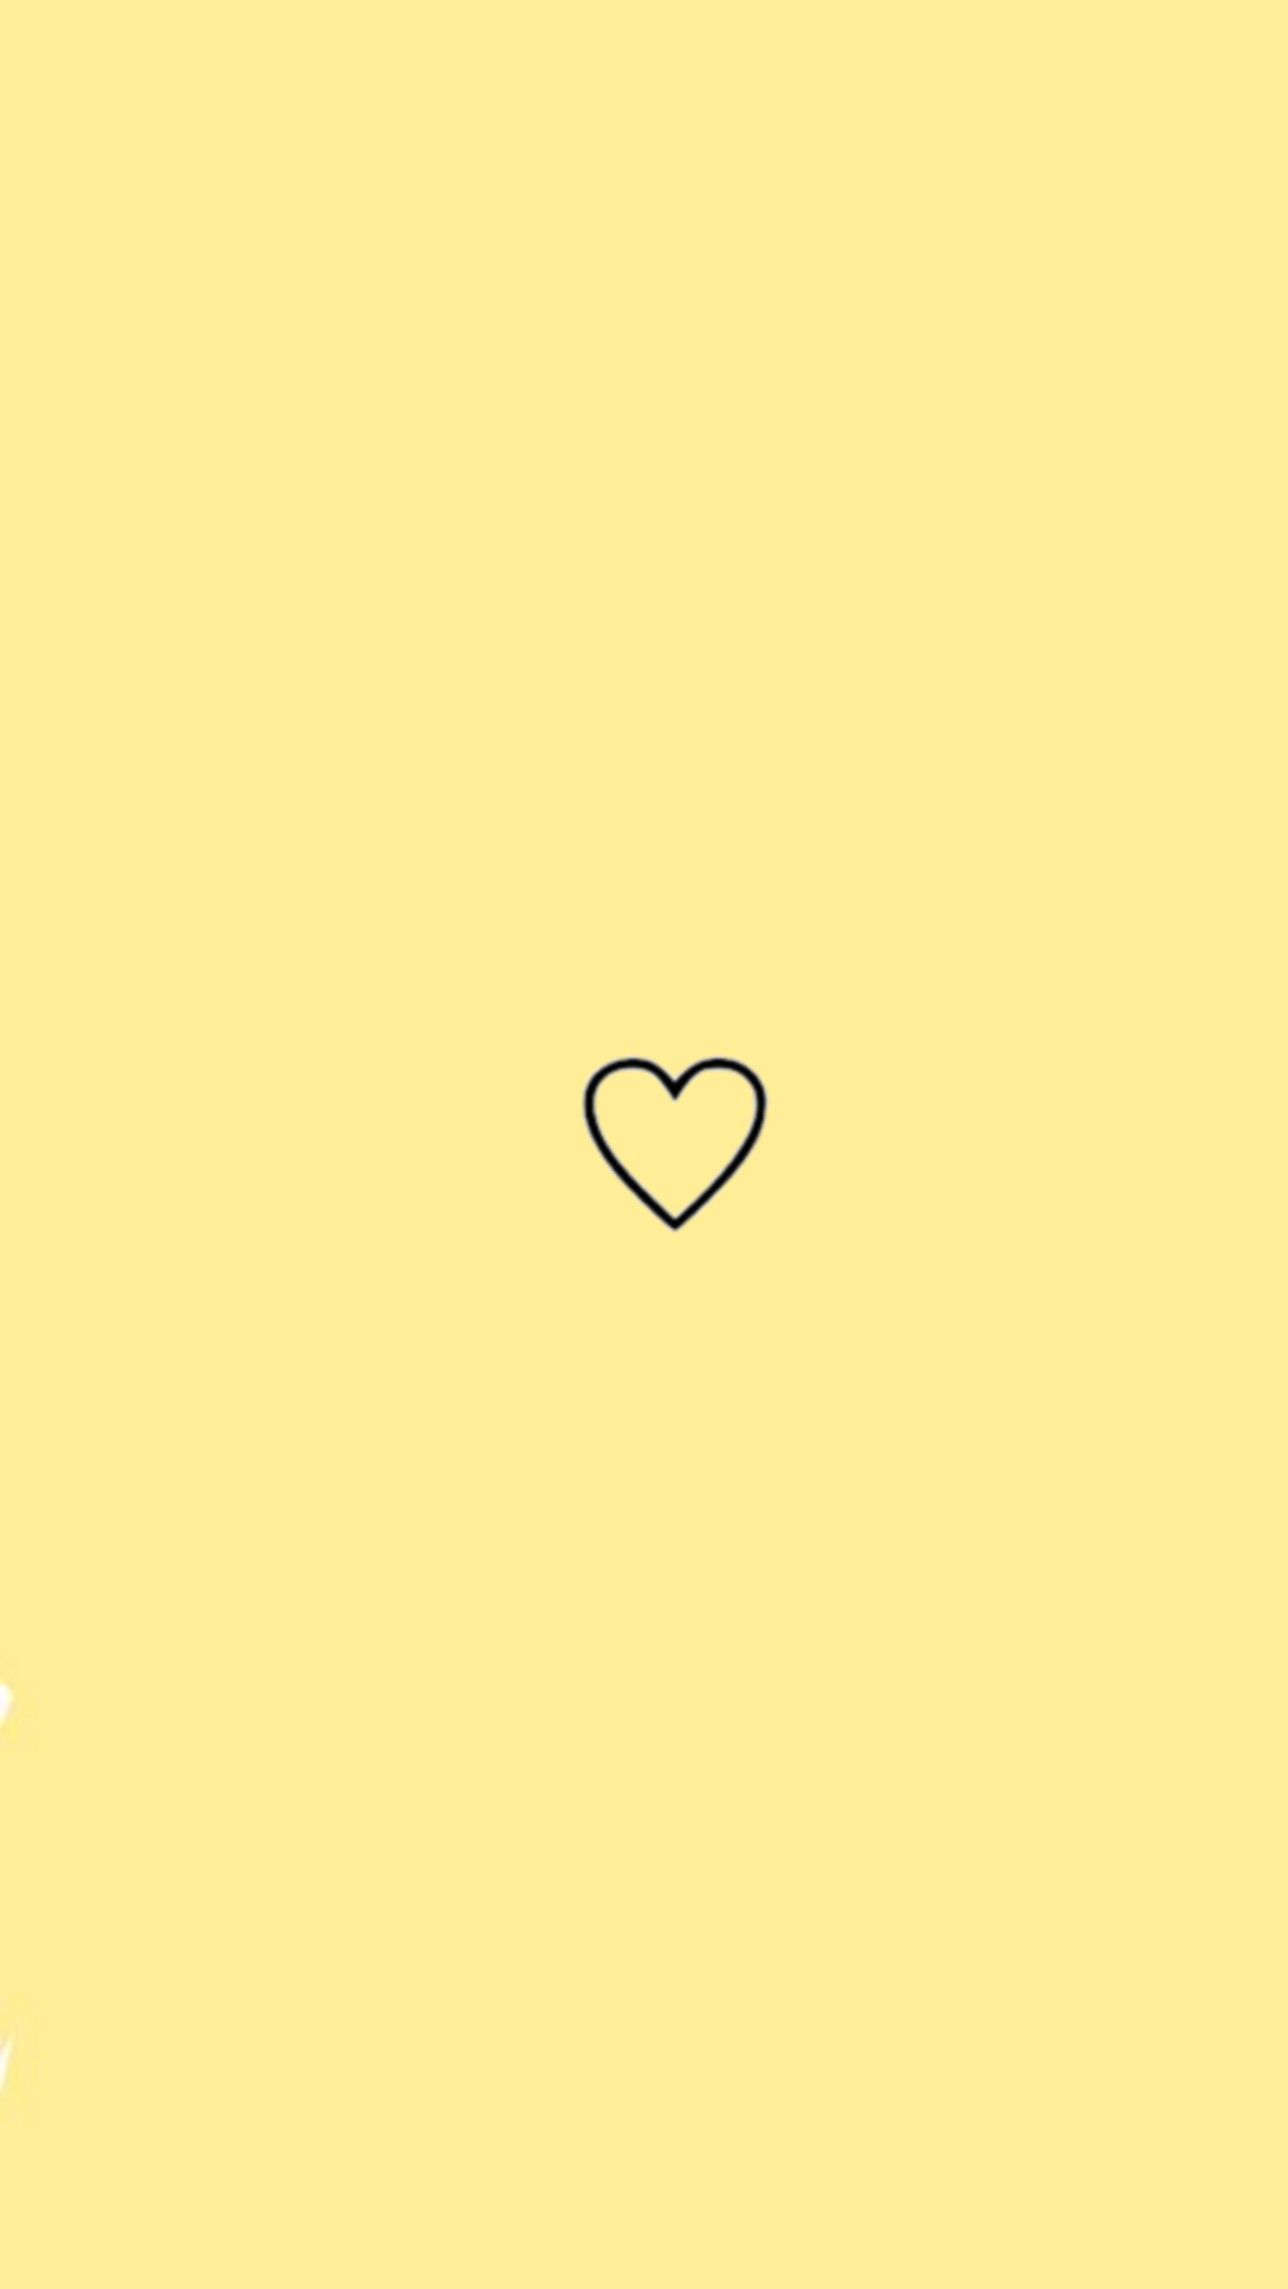 Yellow Aesthetic. Yellow aesthetic, Heart